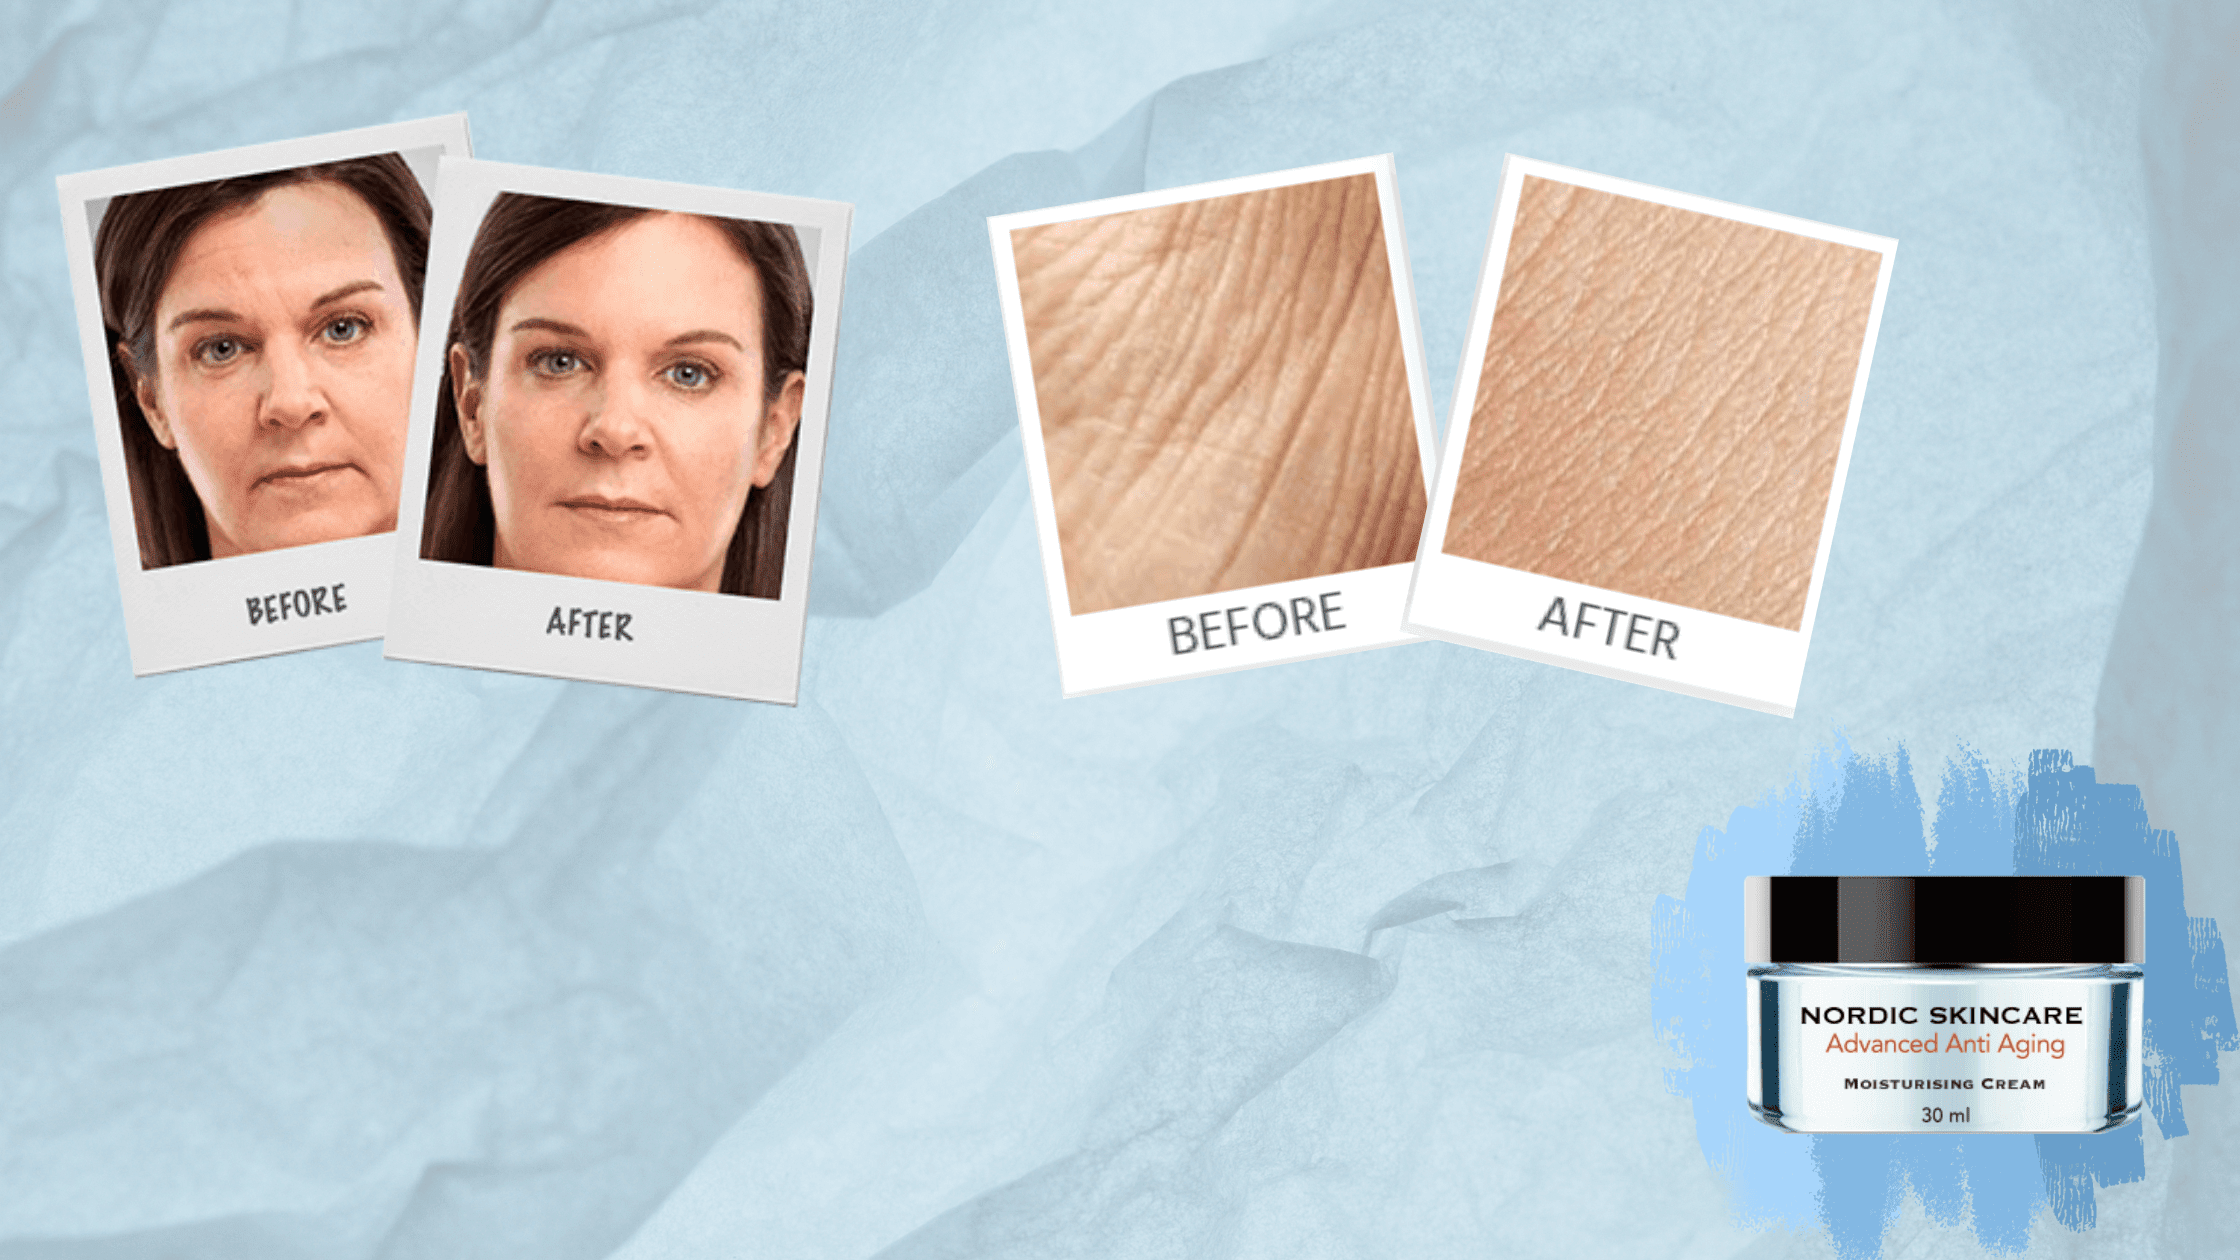 Nordic Skincare Cream Benefits